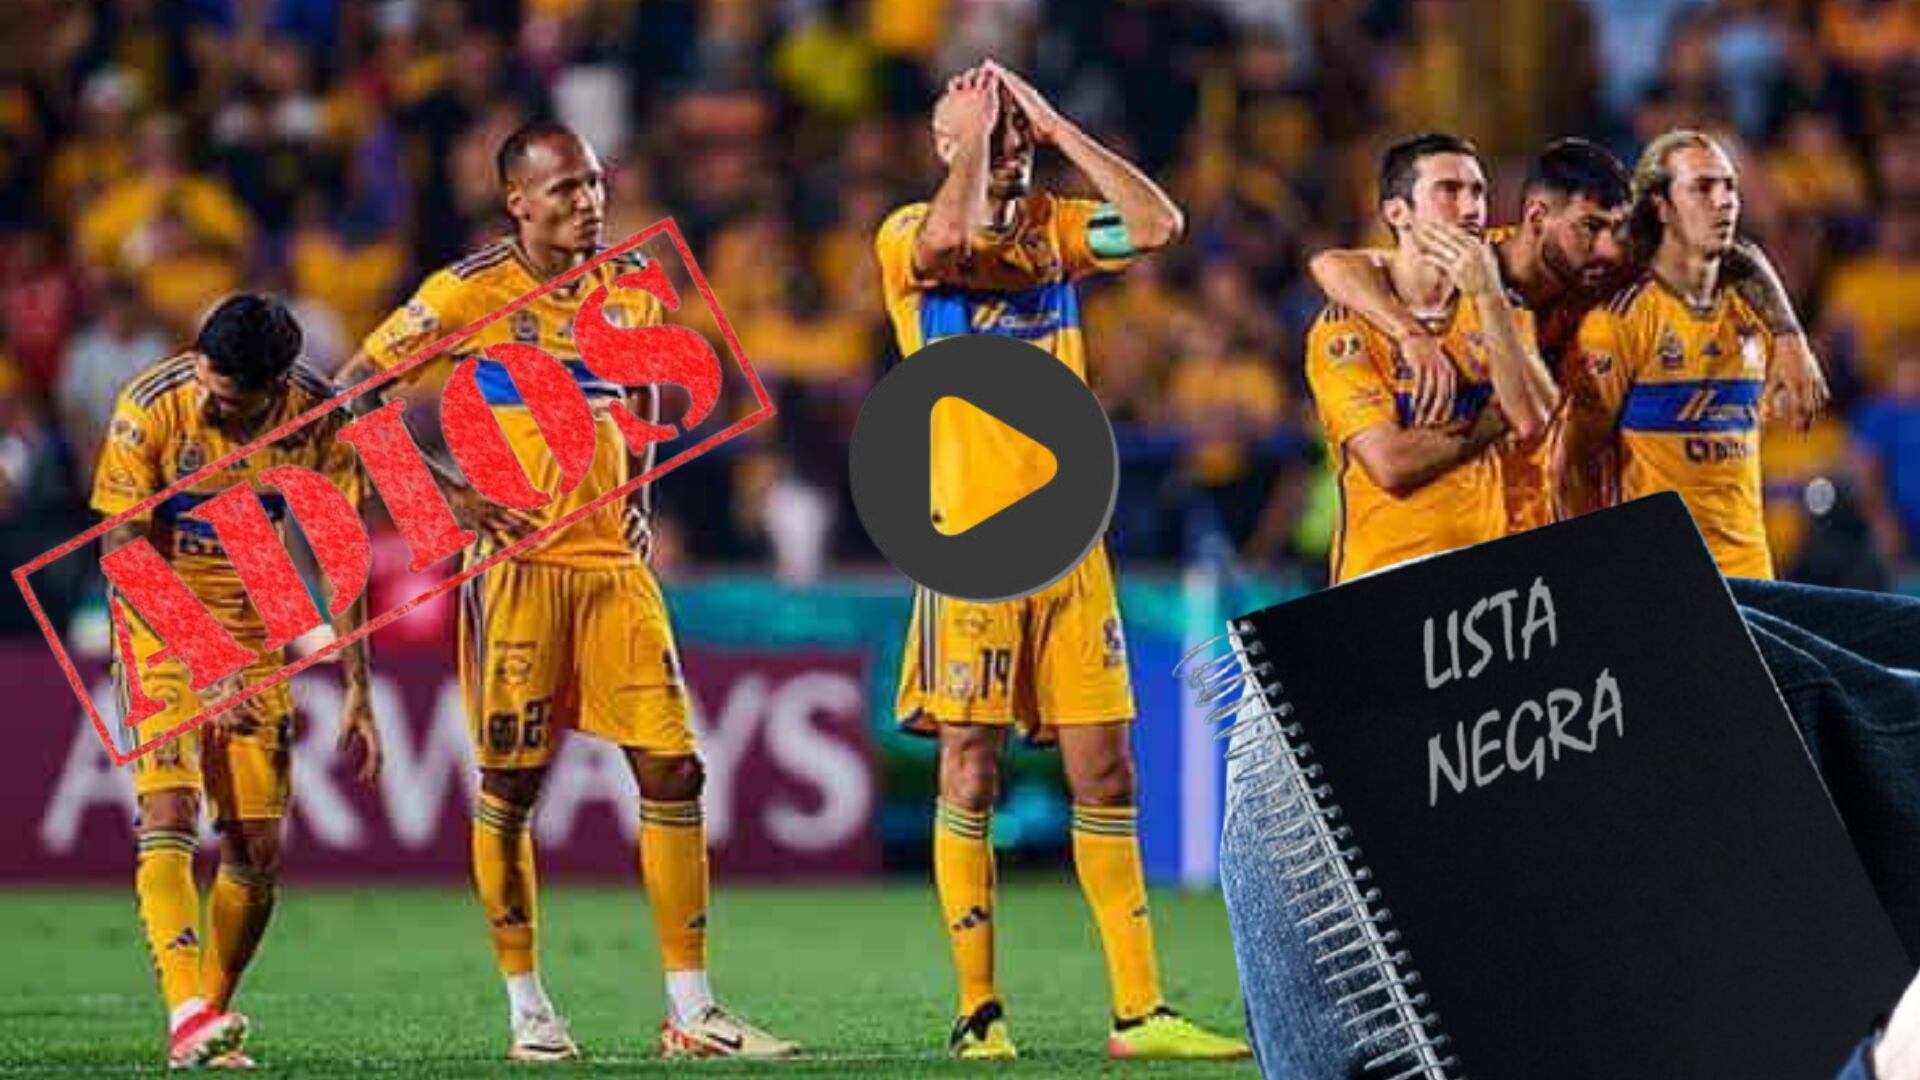 (VIDEO) En exclusiva, los cuatro jugadores de Tigres que saldrían por fracasar ante Rayados